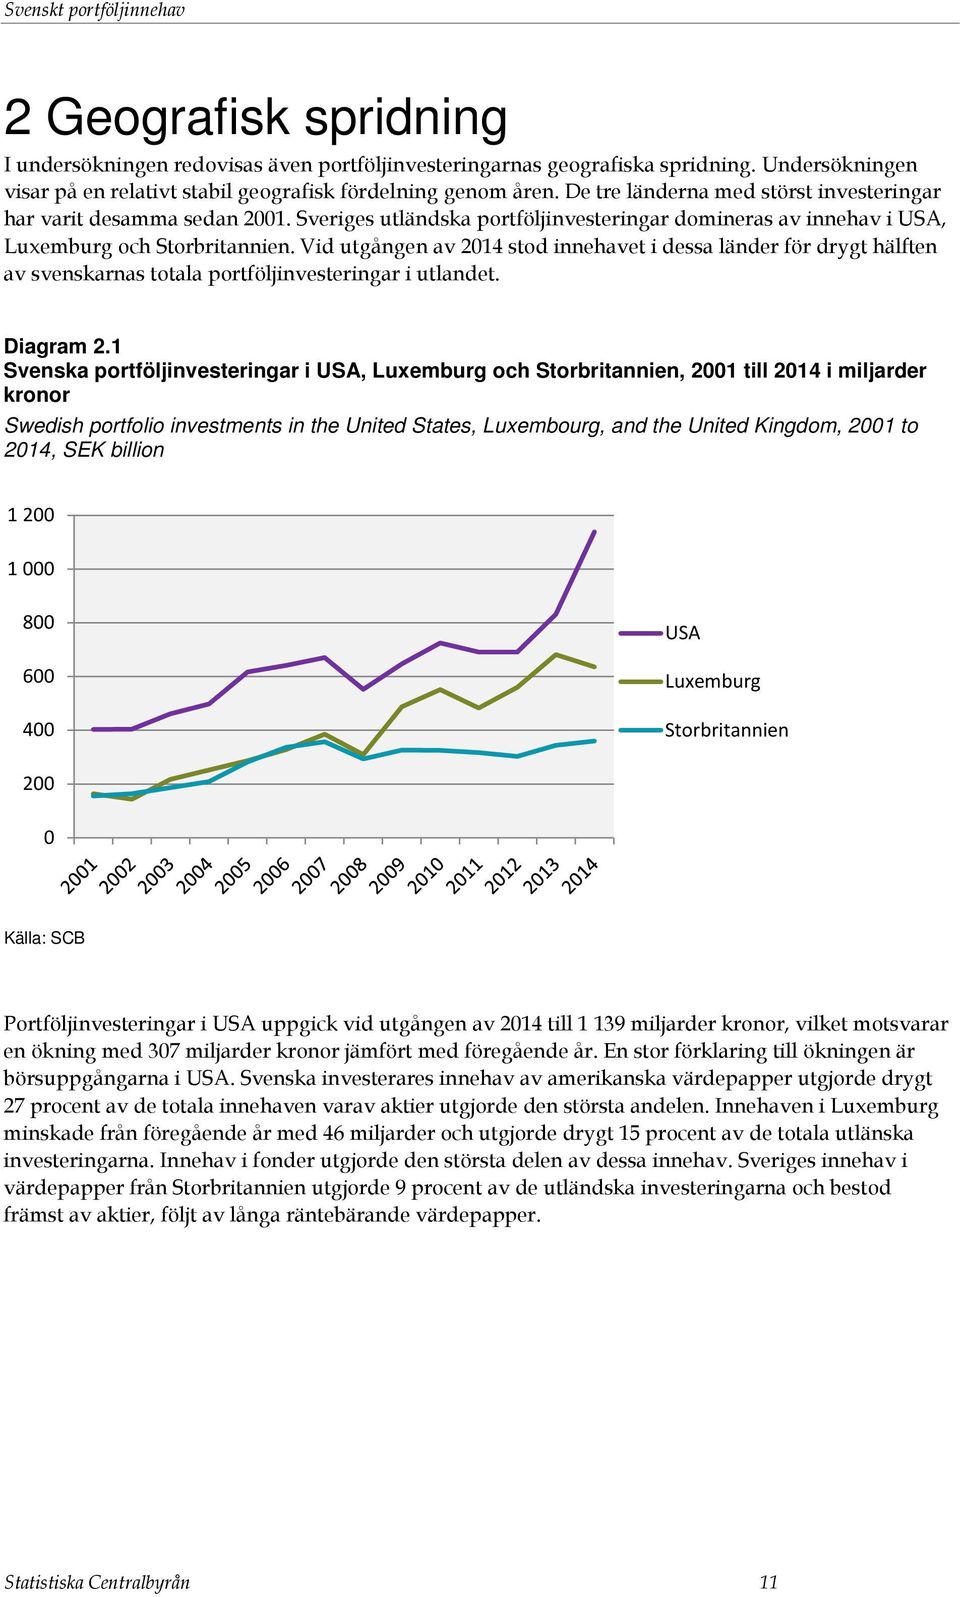 Sveriges utländska portföljinvesteringar domineras av innehav i USA, Luxemburg och Storbritannien.